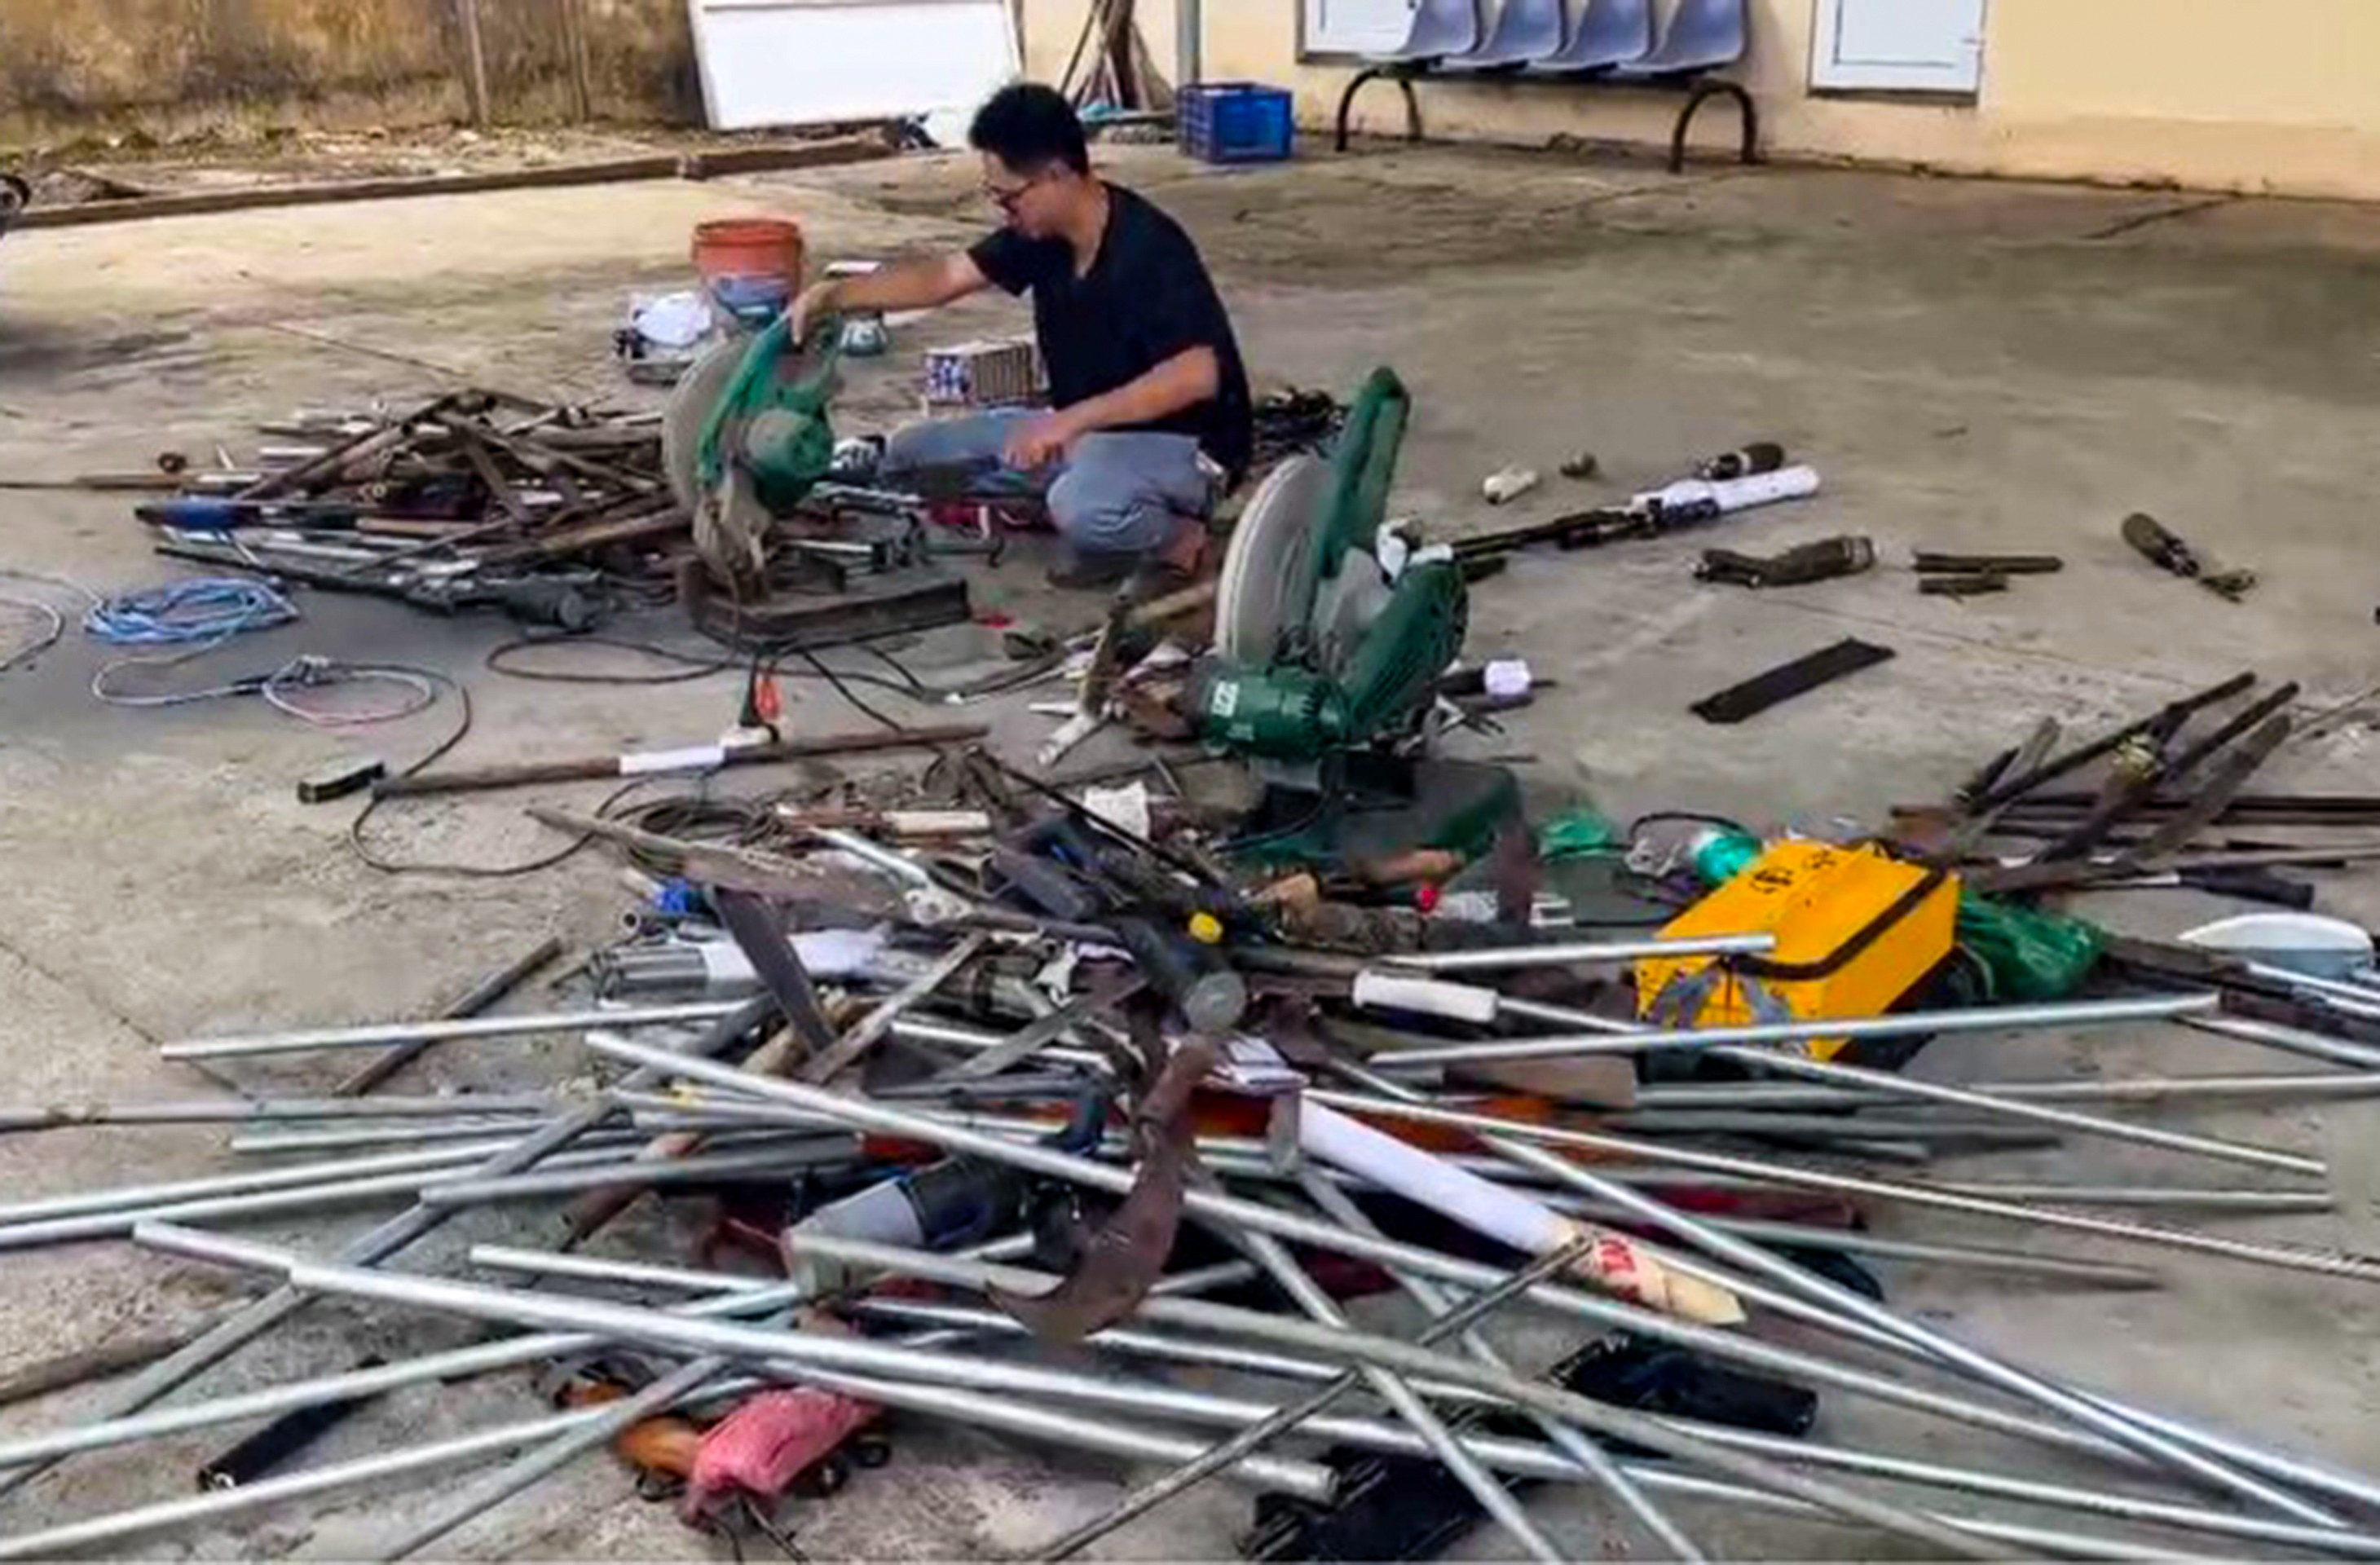 An ninh - Hình sự - Lâm Đồng: Công an tiêu hủy nhiều vũ khí tự chế, hung khí nguy hiểm